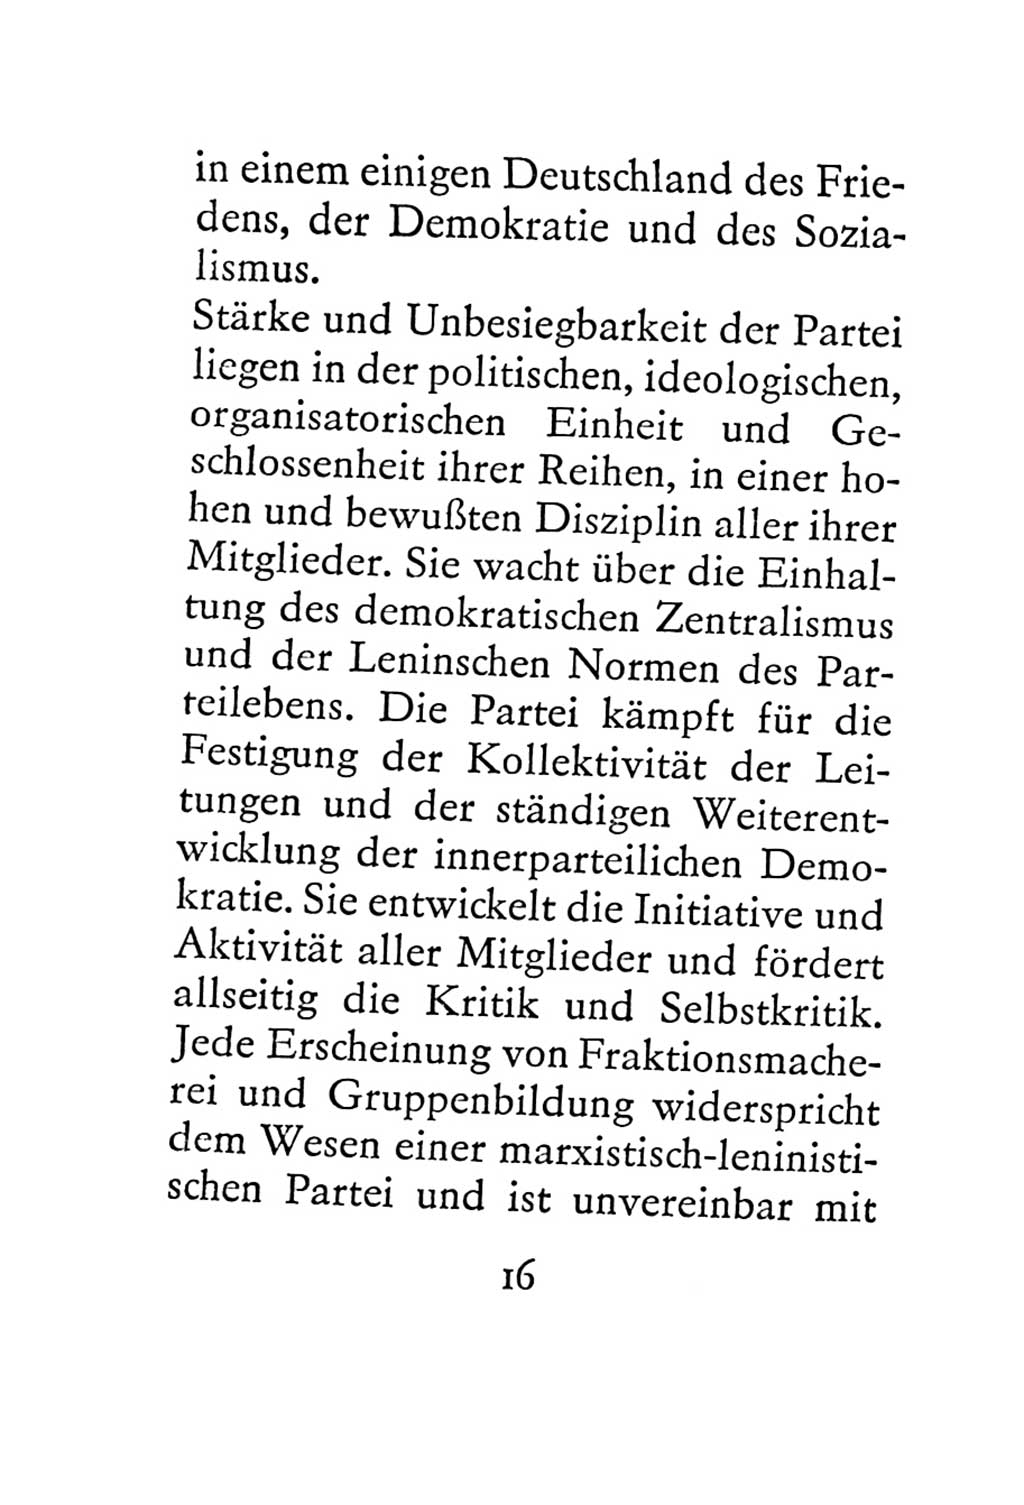 Statut der Sozialistischen Einheitspartei Deutschlands (SED) 1967, Seite 16 (St. SED DDR 1967, S. 16)